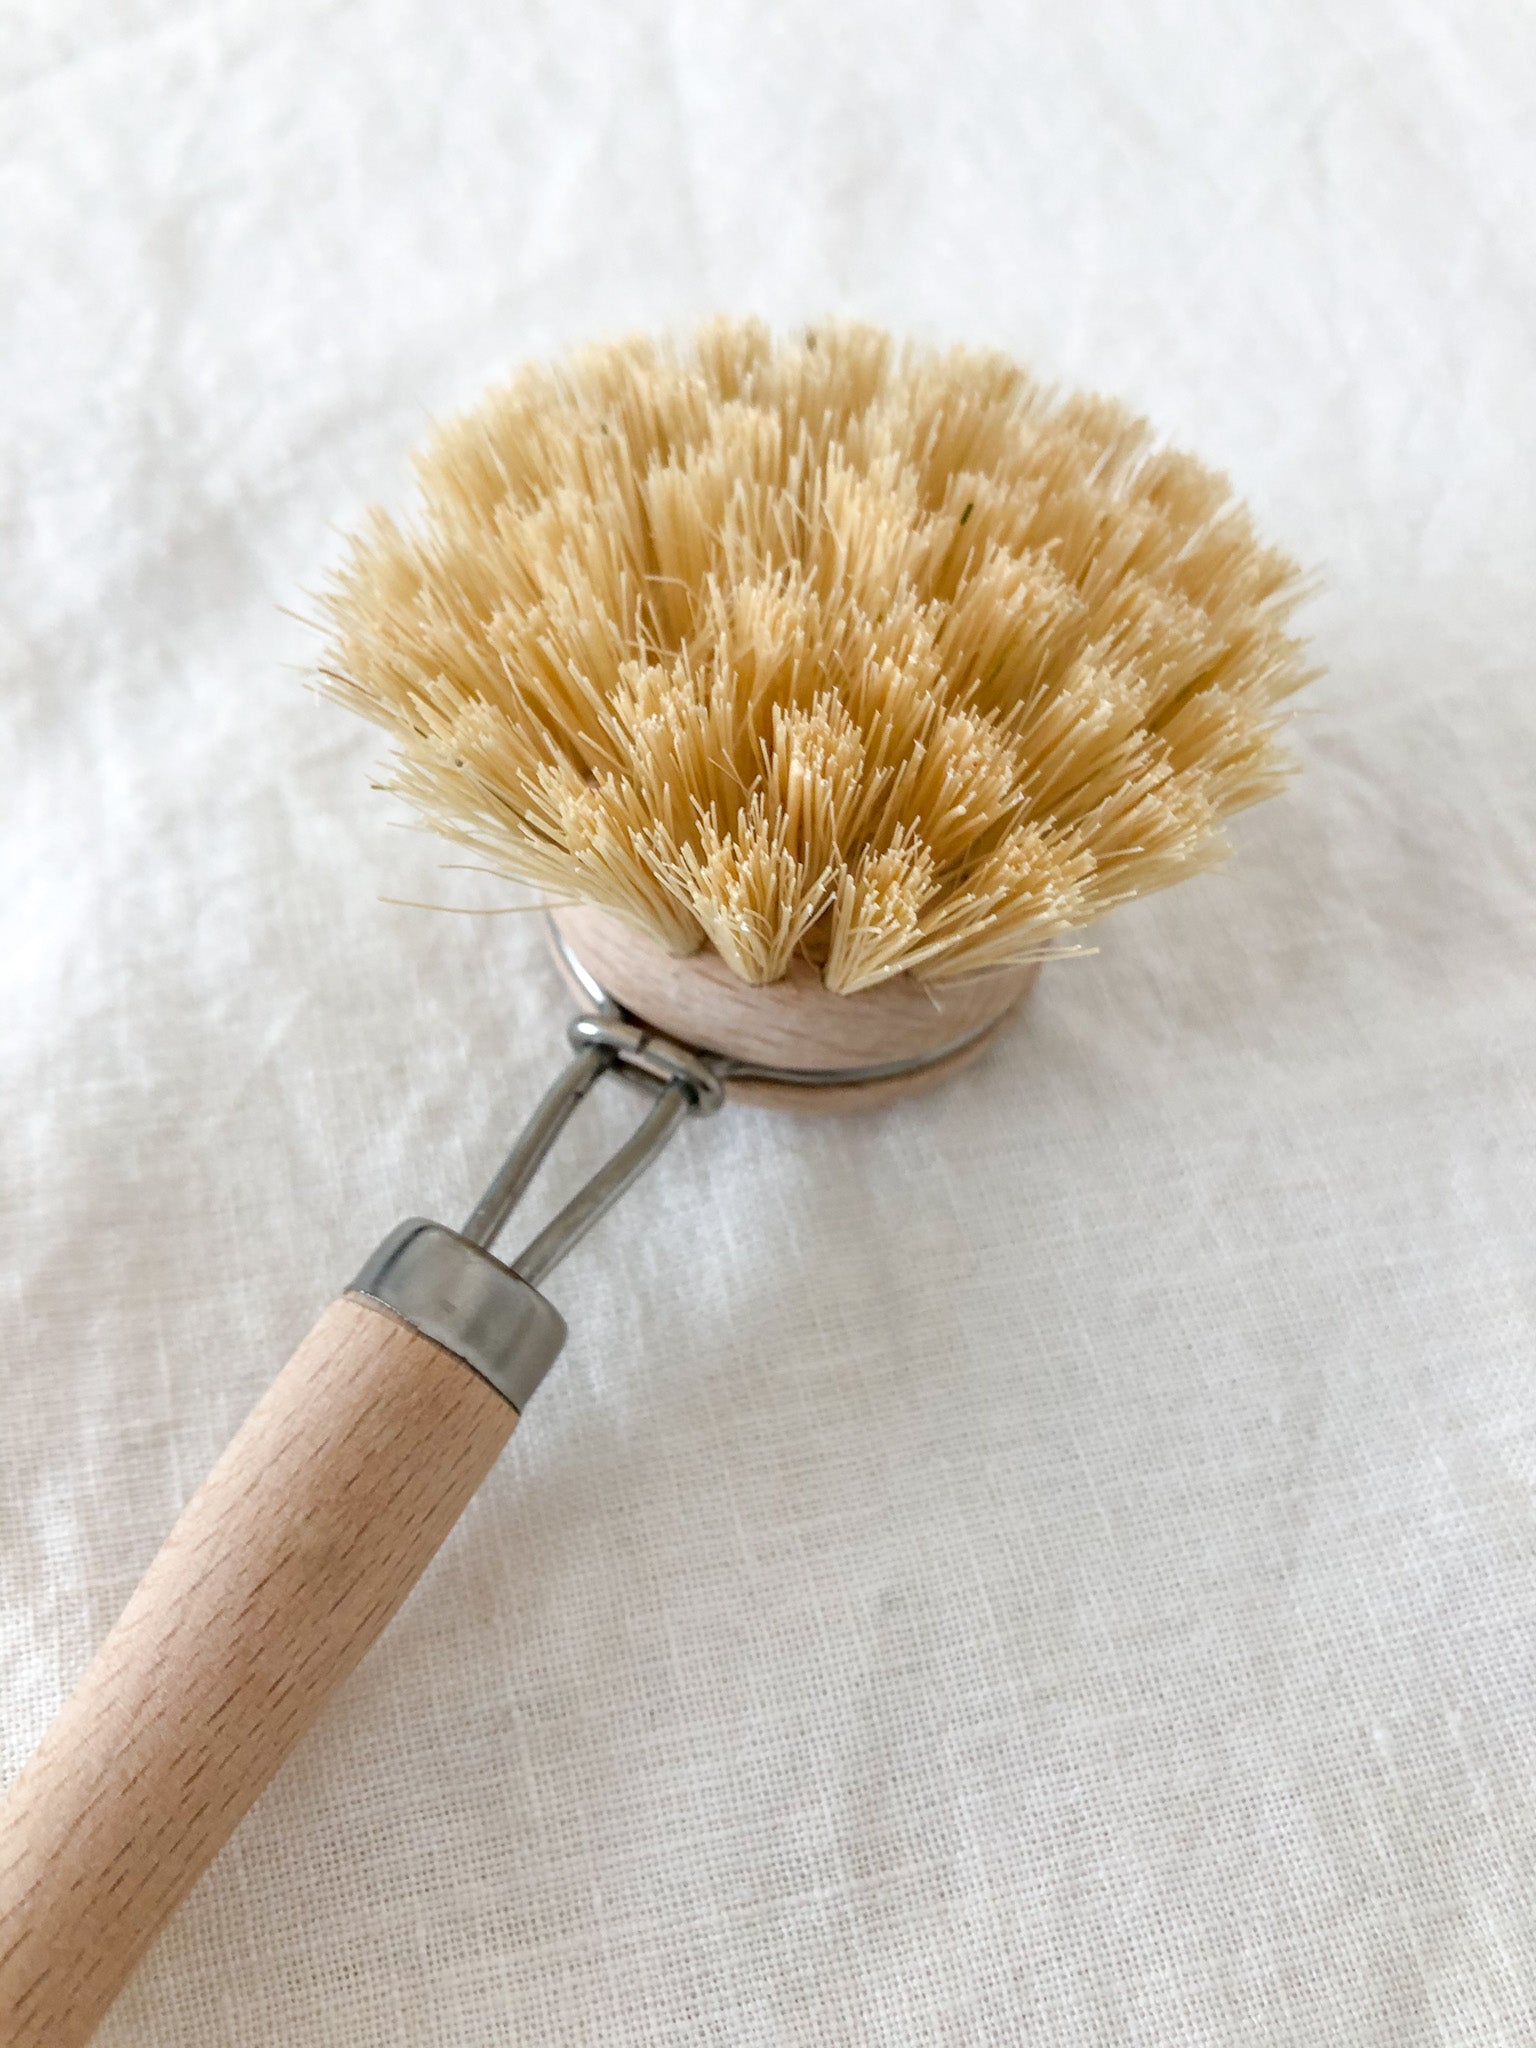 Dish Washing Brush: Wooden